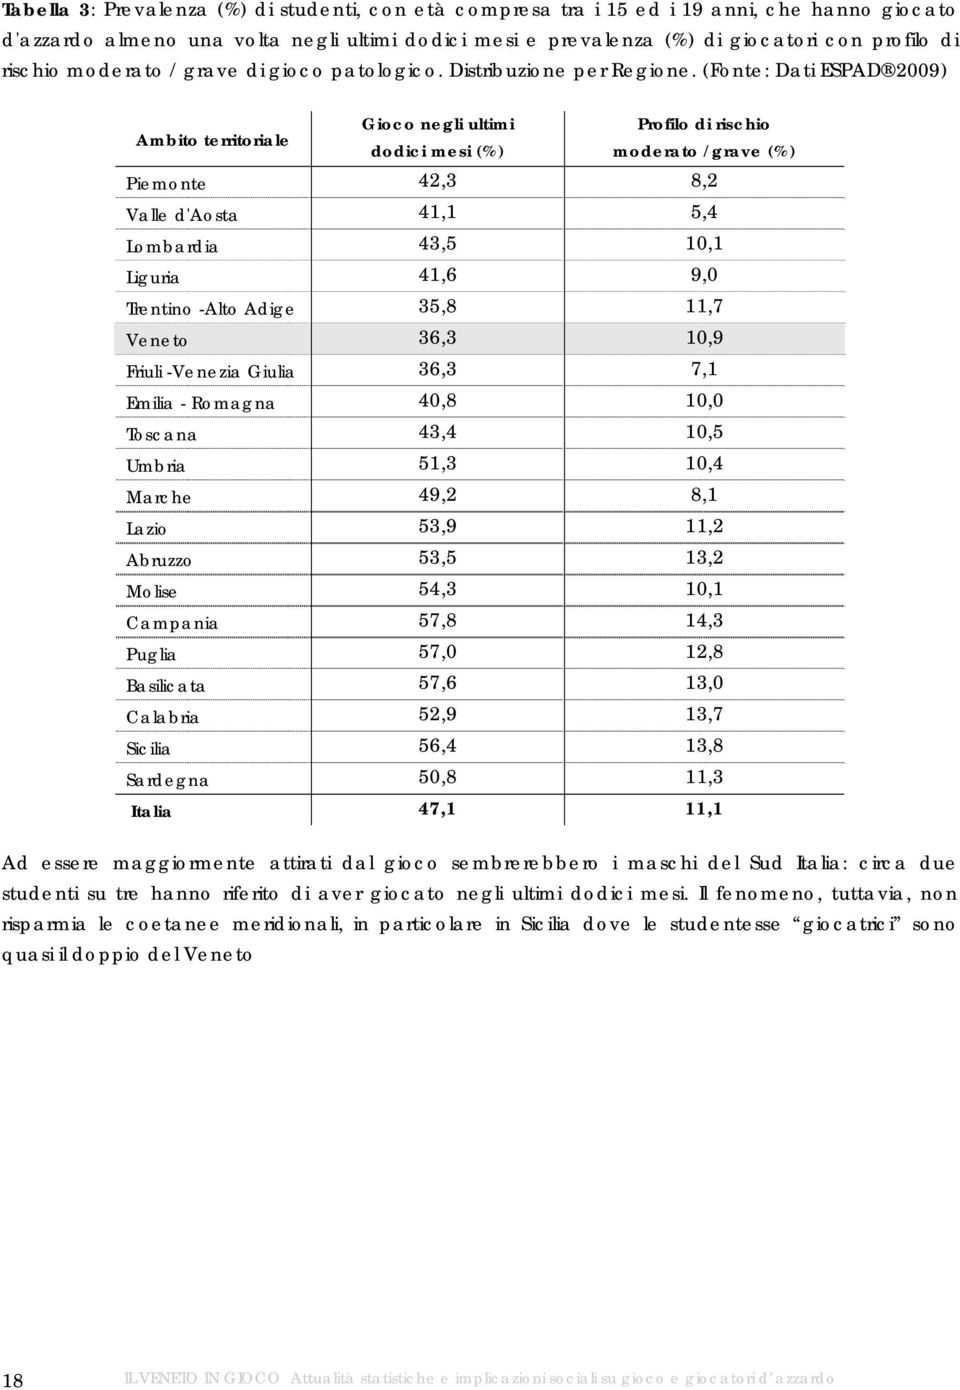 (Fonte: Dati ESPAD 2009) Ambito territoriale Gioco negli ultimi Profilo di rischio dodici mesi (%) moderato /grave (%) Piemonte 42,3 8,2 Valle d'aosta 41,1 5,4 Lombardia 43,5 10,1 Liguria 41,6 9,0